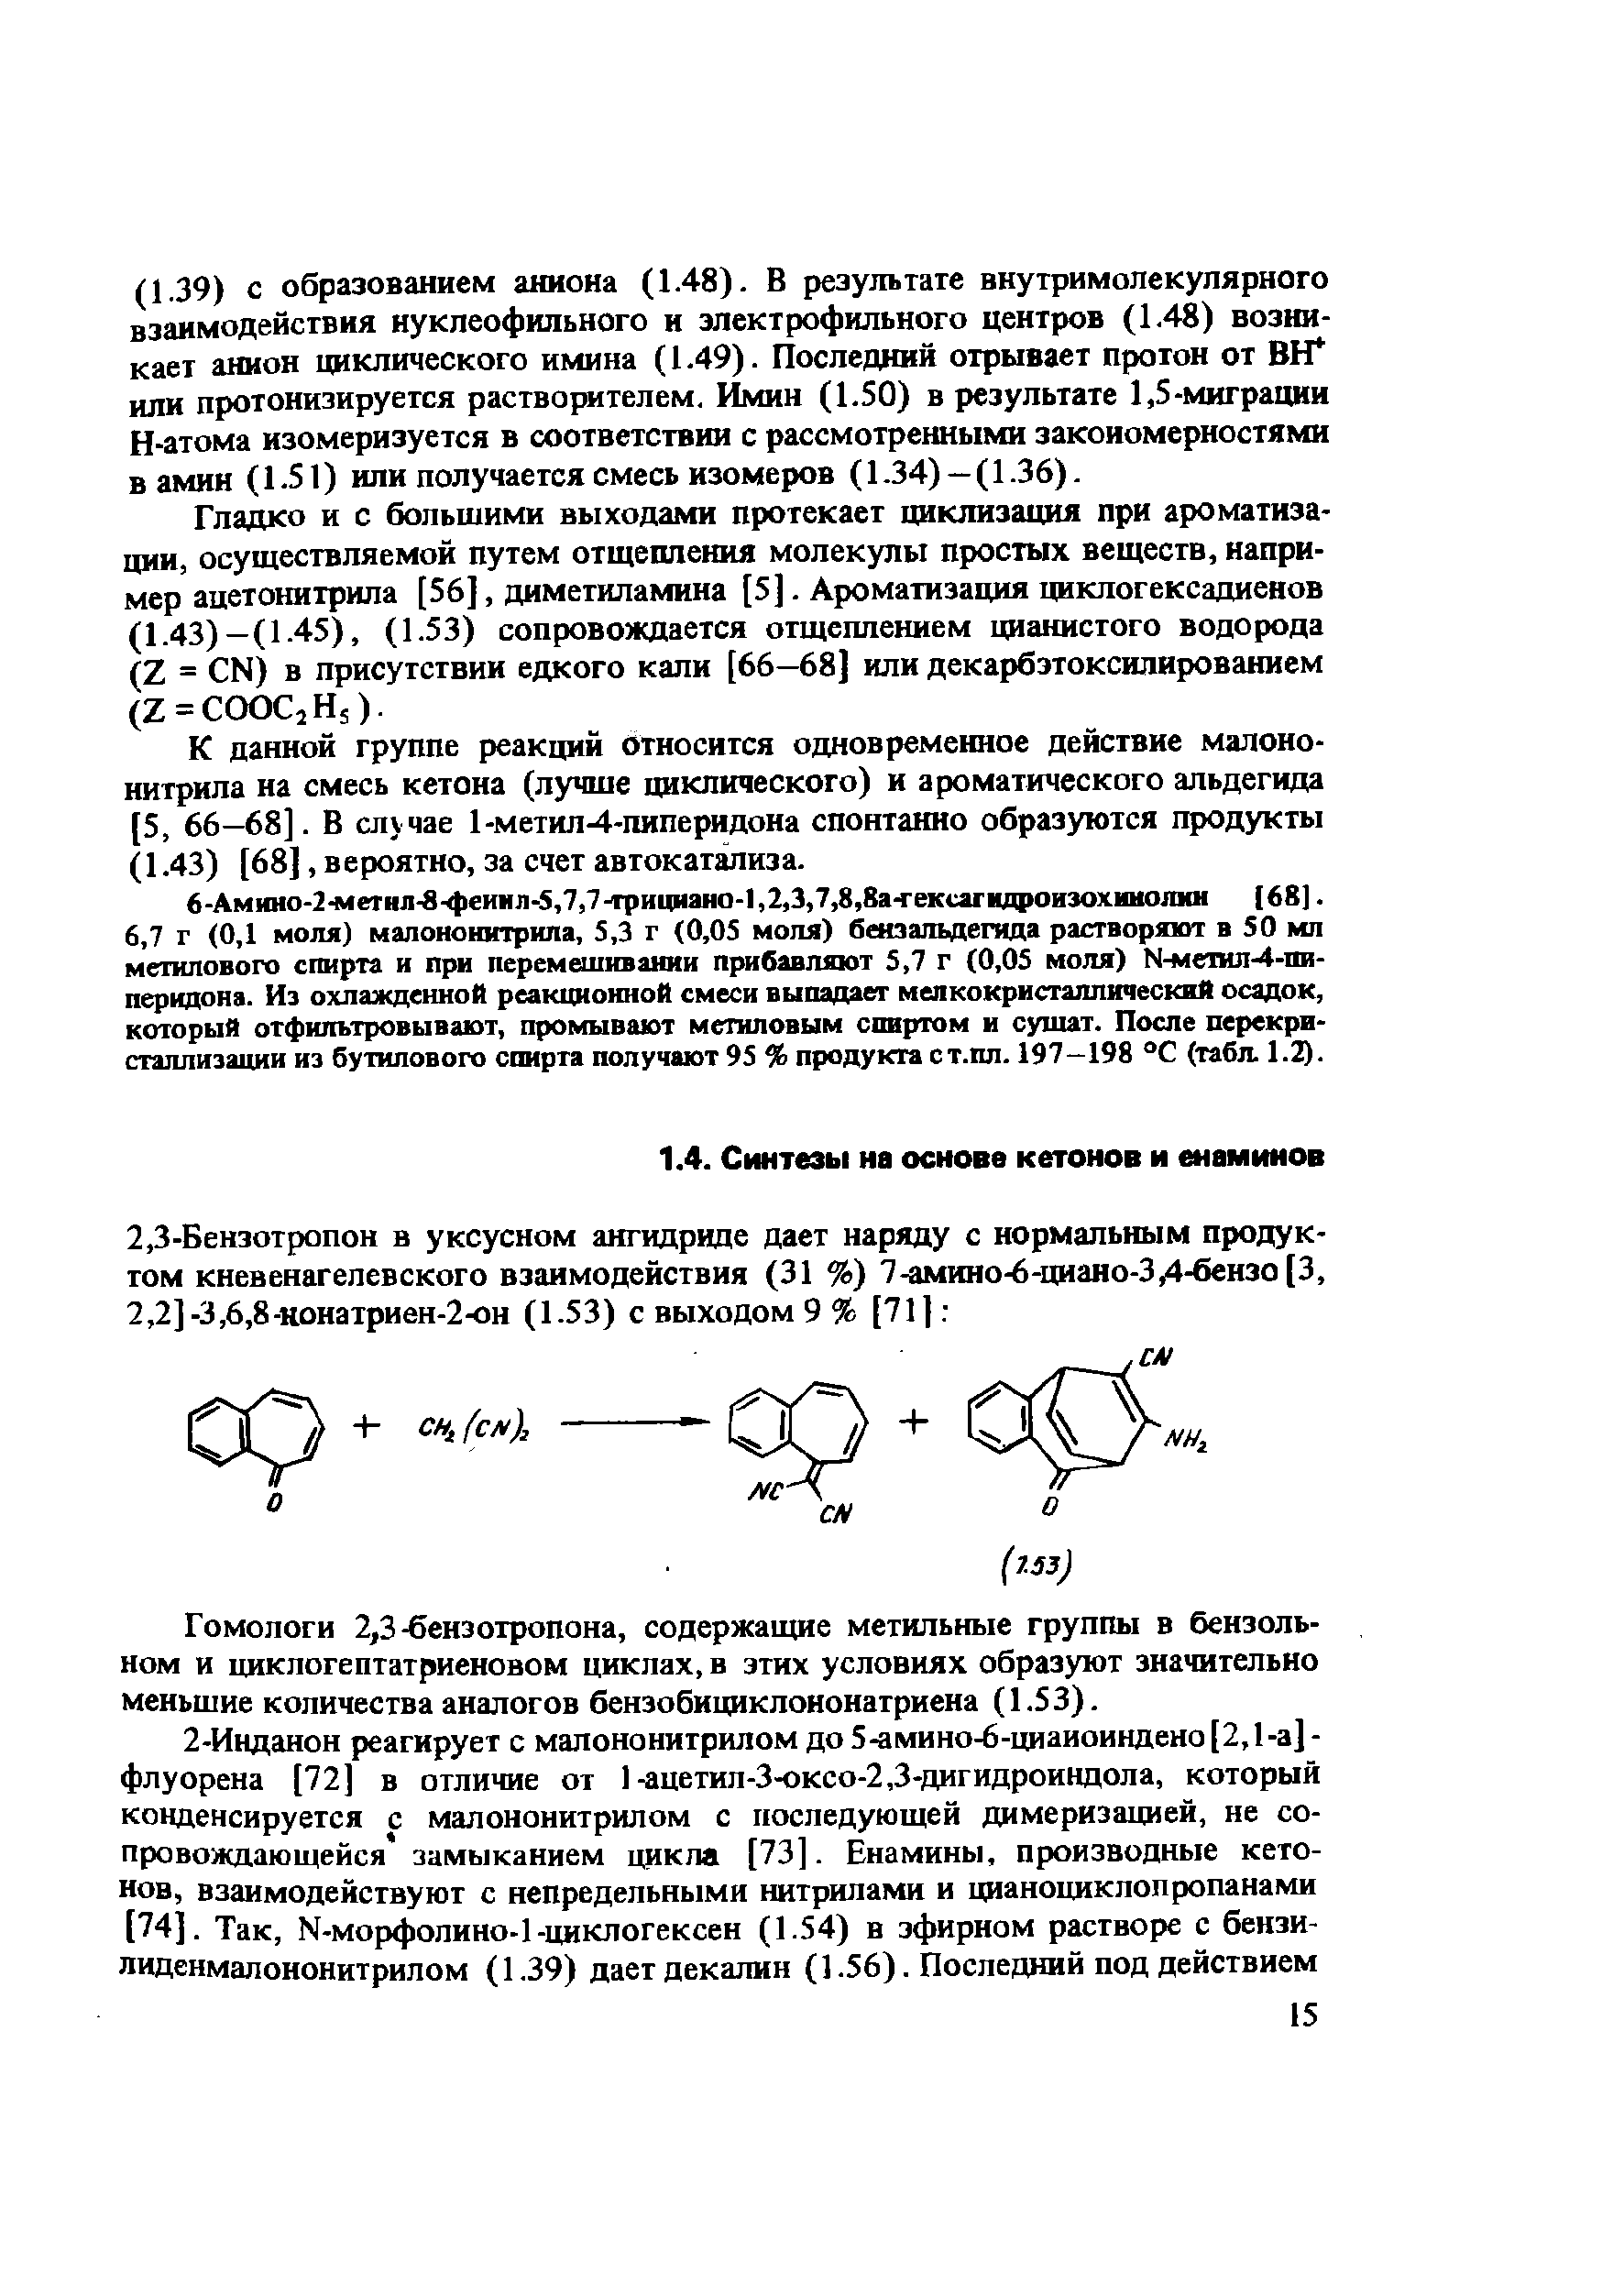 Гладко и с большими выходами протекает циклизация при ароматизации, осуществляемой путем отщепления молекулы простых веществ, например ацетонитрила [56], диметиламина [5]. Ароматизация циклогексадиенов (1.43)—(1.45), (1.53) сопровождается отщеплением цианистого водорода (Z = N) в присутствии едкого кали [66—68] или декарбэтоксилированием (Z = OO 2Hs).